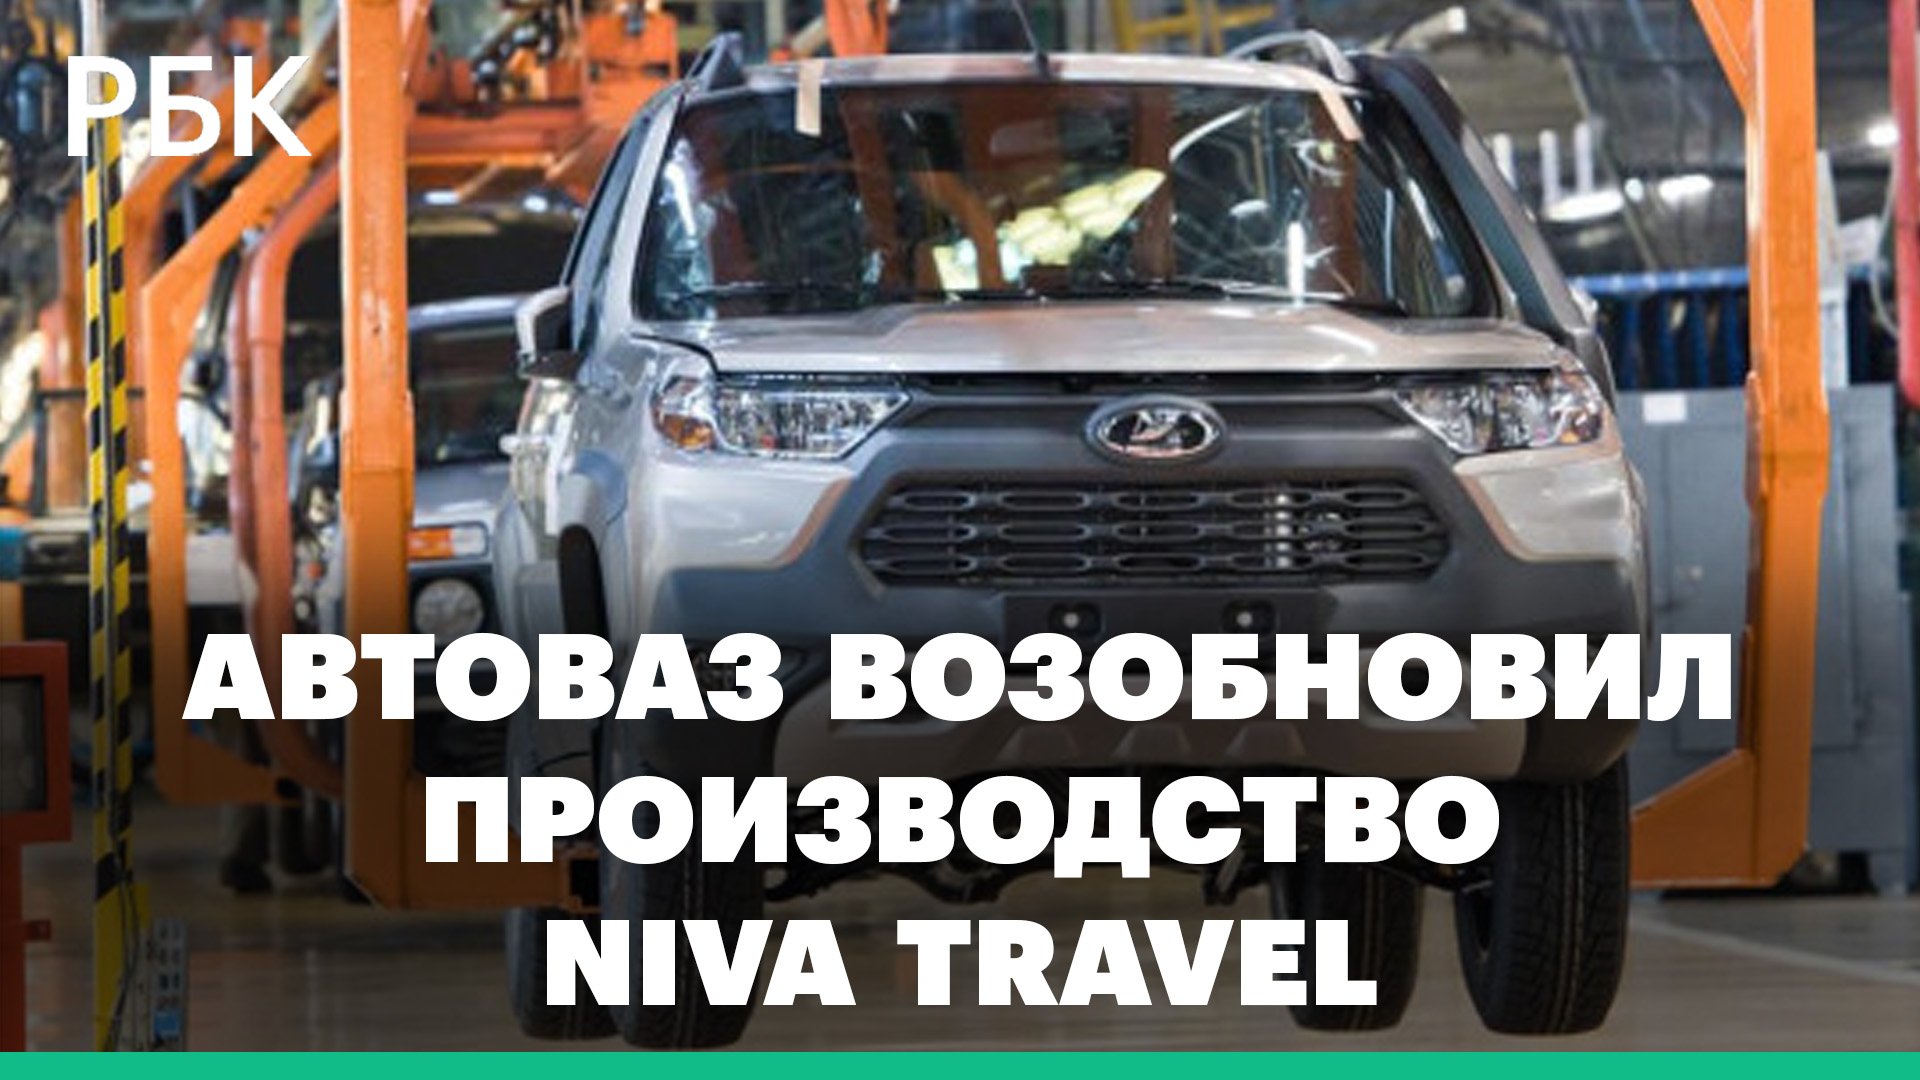 АвтоВАЗ возобновил производство Niva Travel